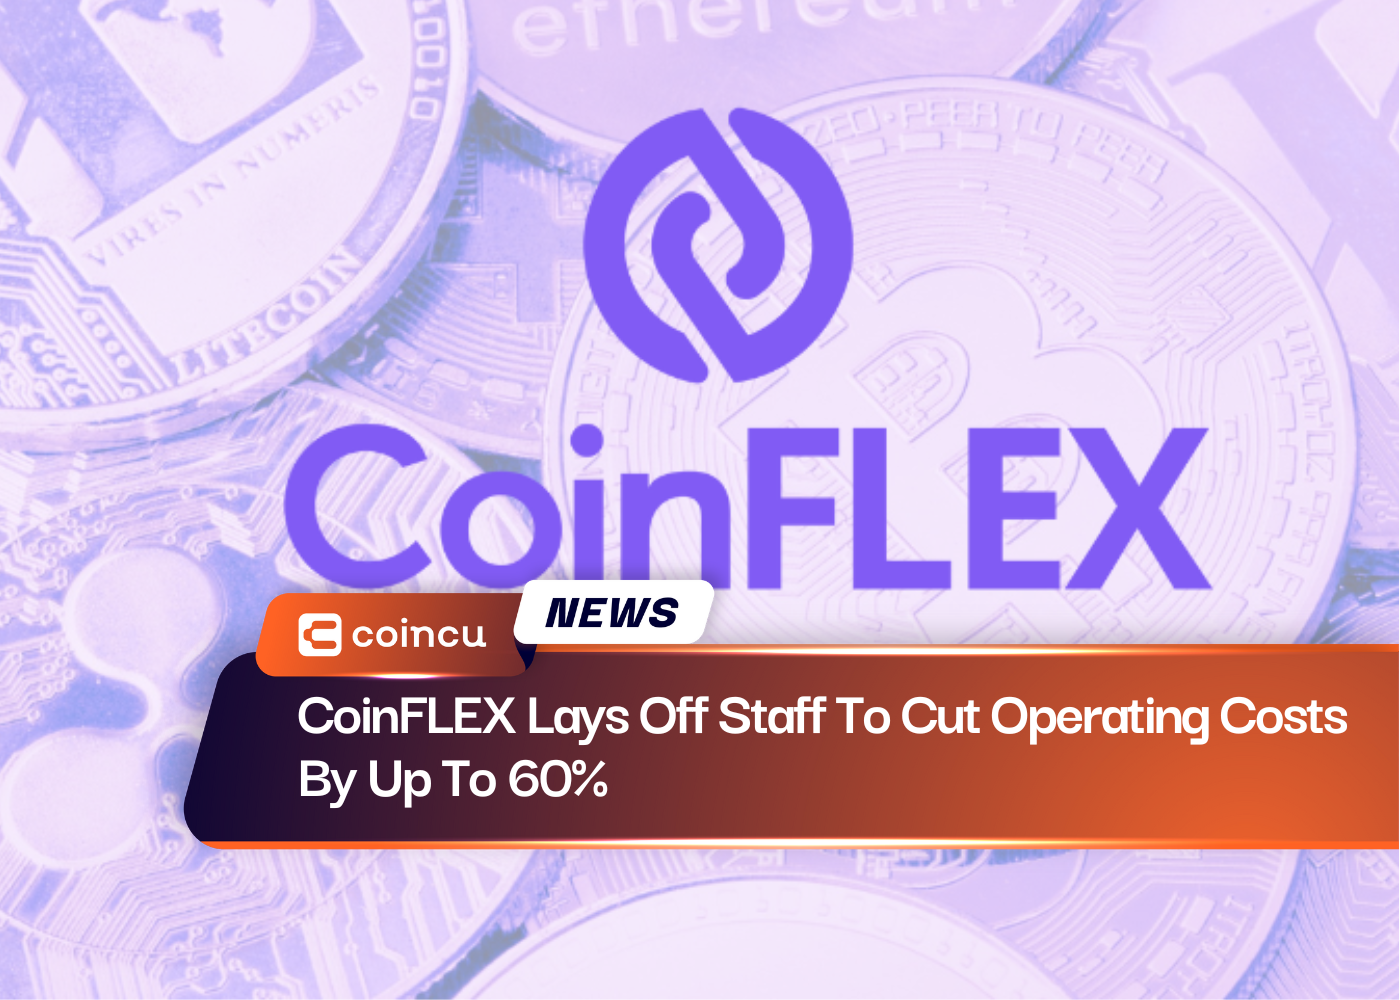 CoinFLEX despide personal para reducir los costos operativos hasta en un 60%